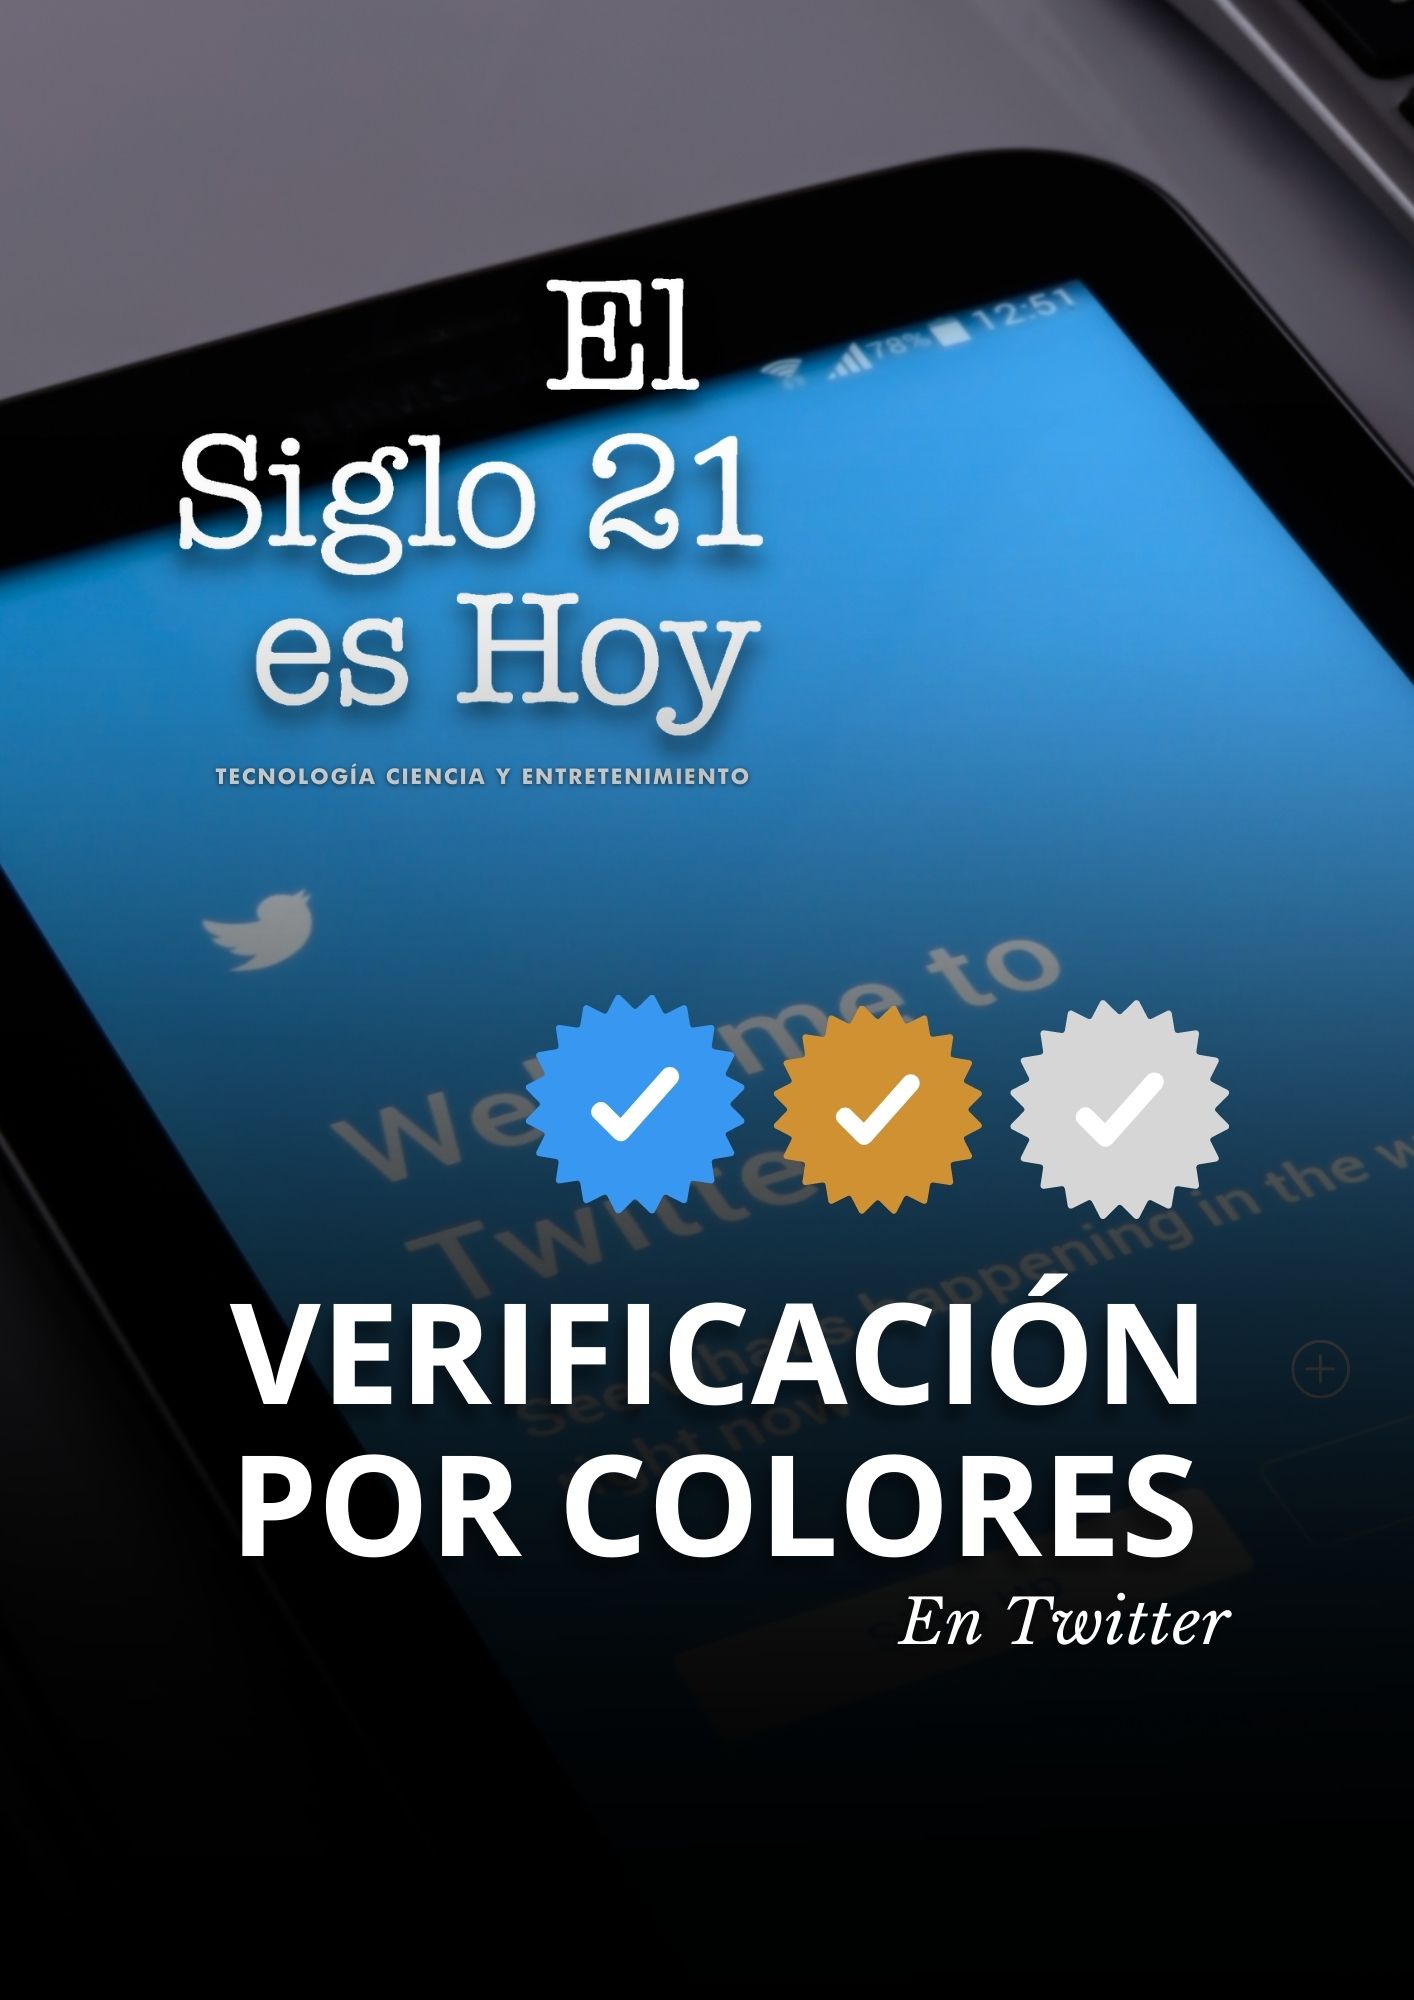 Verificación en 3 colores en Twitter: Azul, dorado y gris